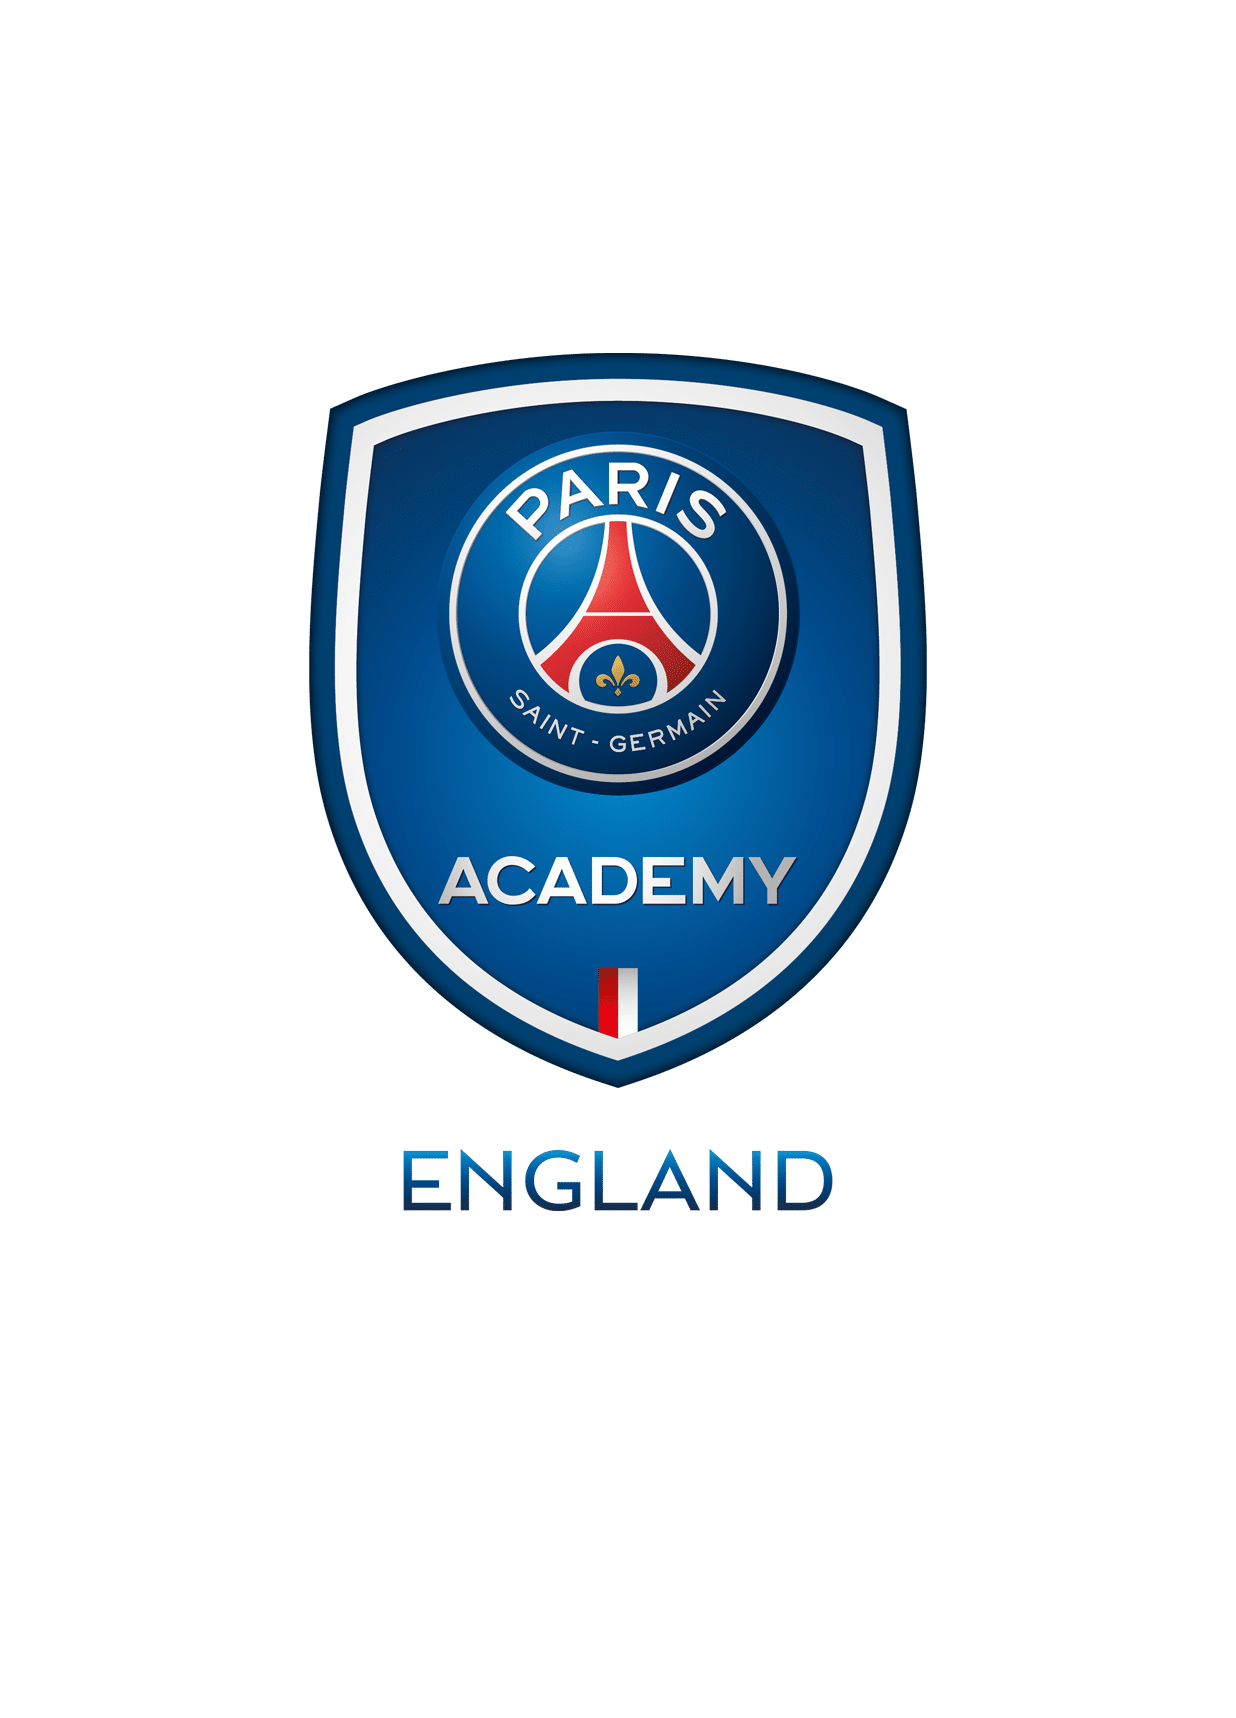 Education & Football Development Programme - PSG Academy UK